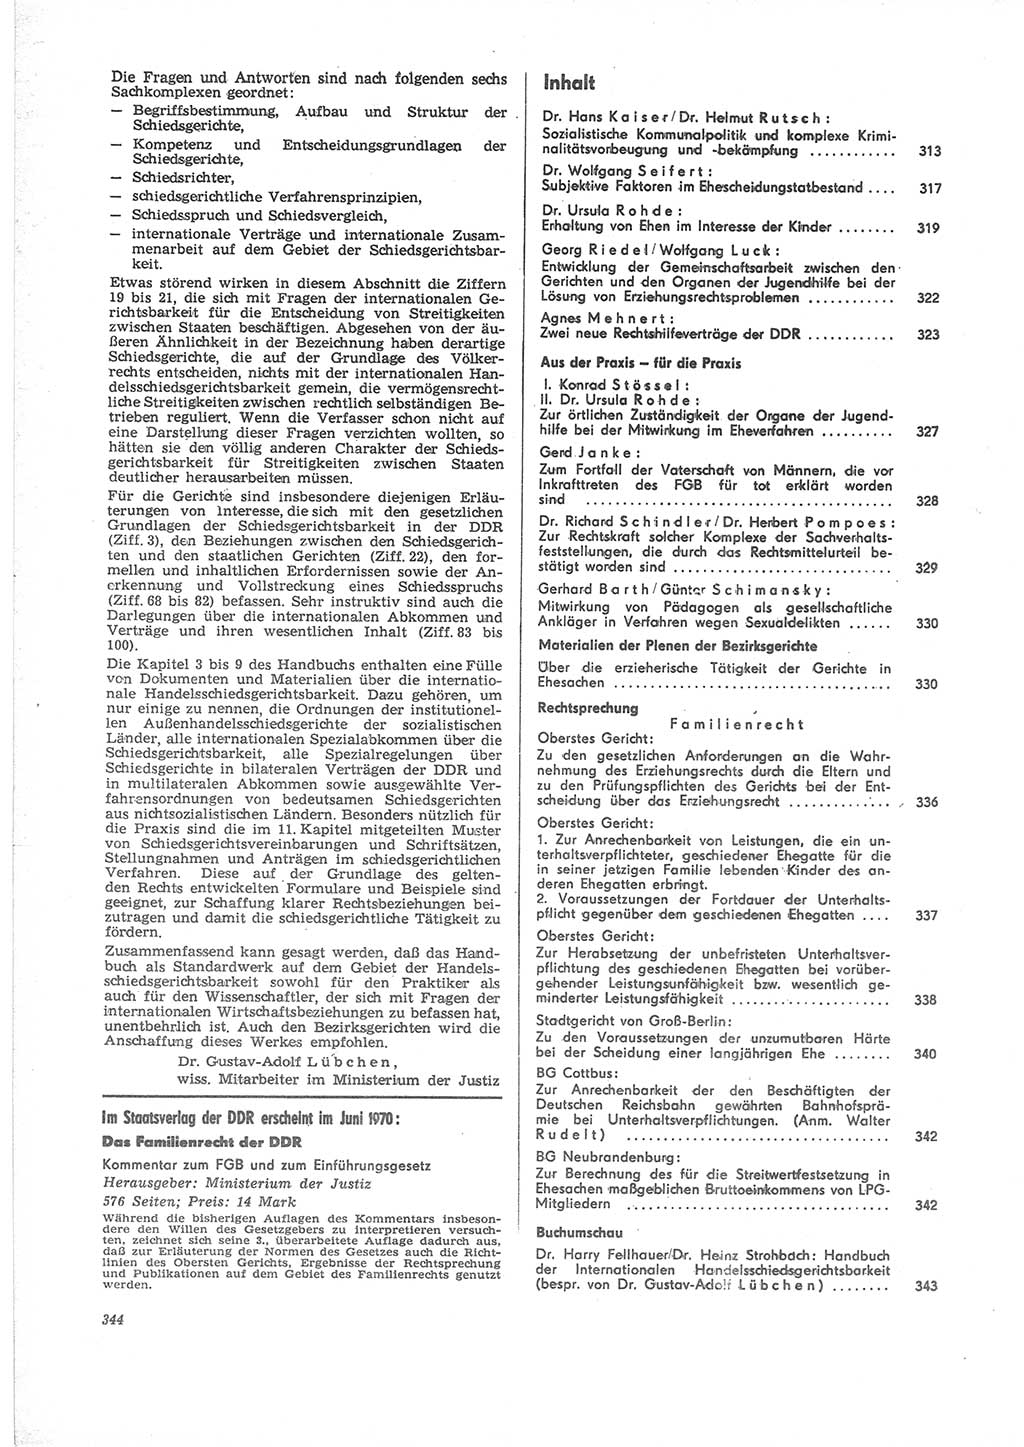 Neue Justiz (NJ), Zeitschrift für Recht und Rechtswissenschaft [Deutsche Demokratische Republik (DDR)], 24. Jahrgang 1970, Seite 344 (NJ DDR 1970, S. 344)